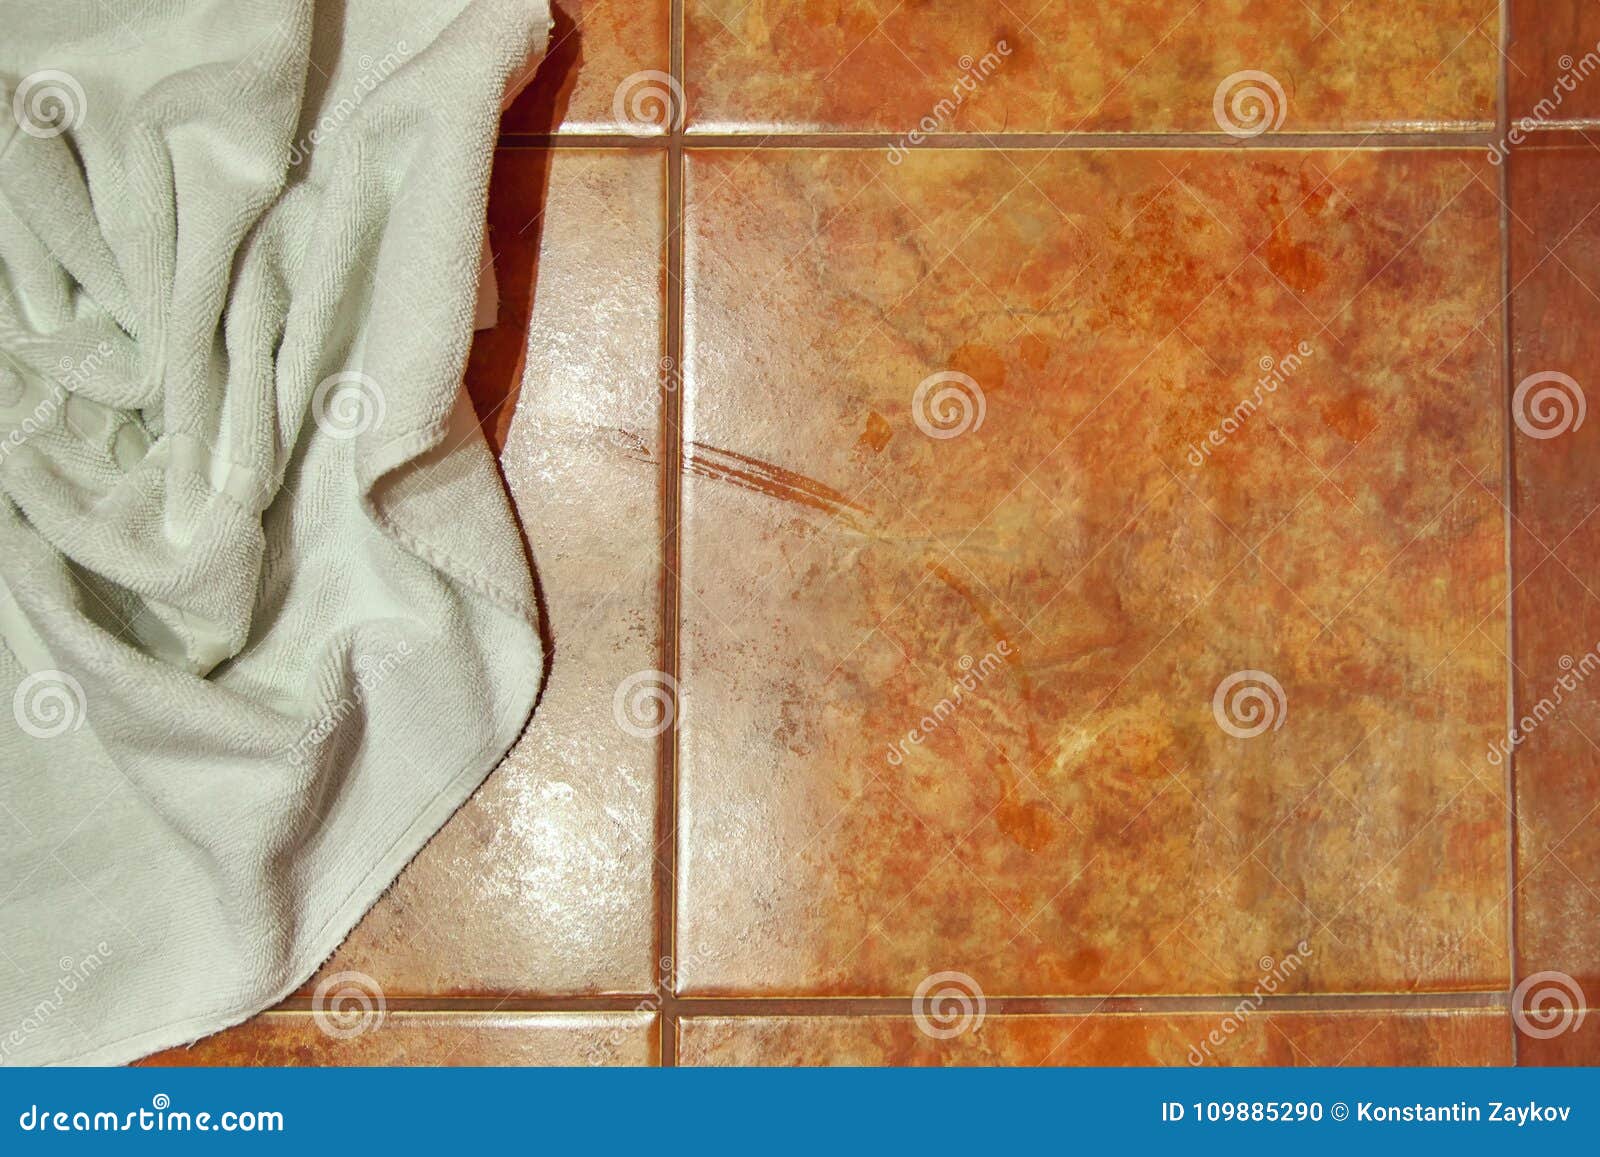 Copy Space Wet Creased White Towel On Ceramic Floor In Bathroom